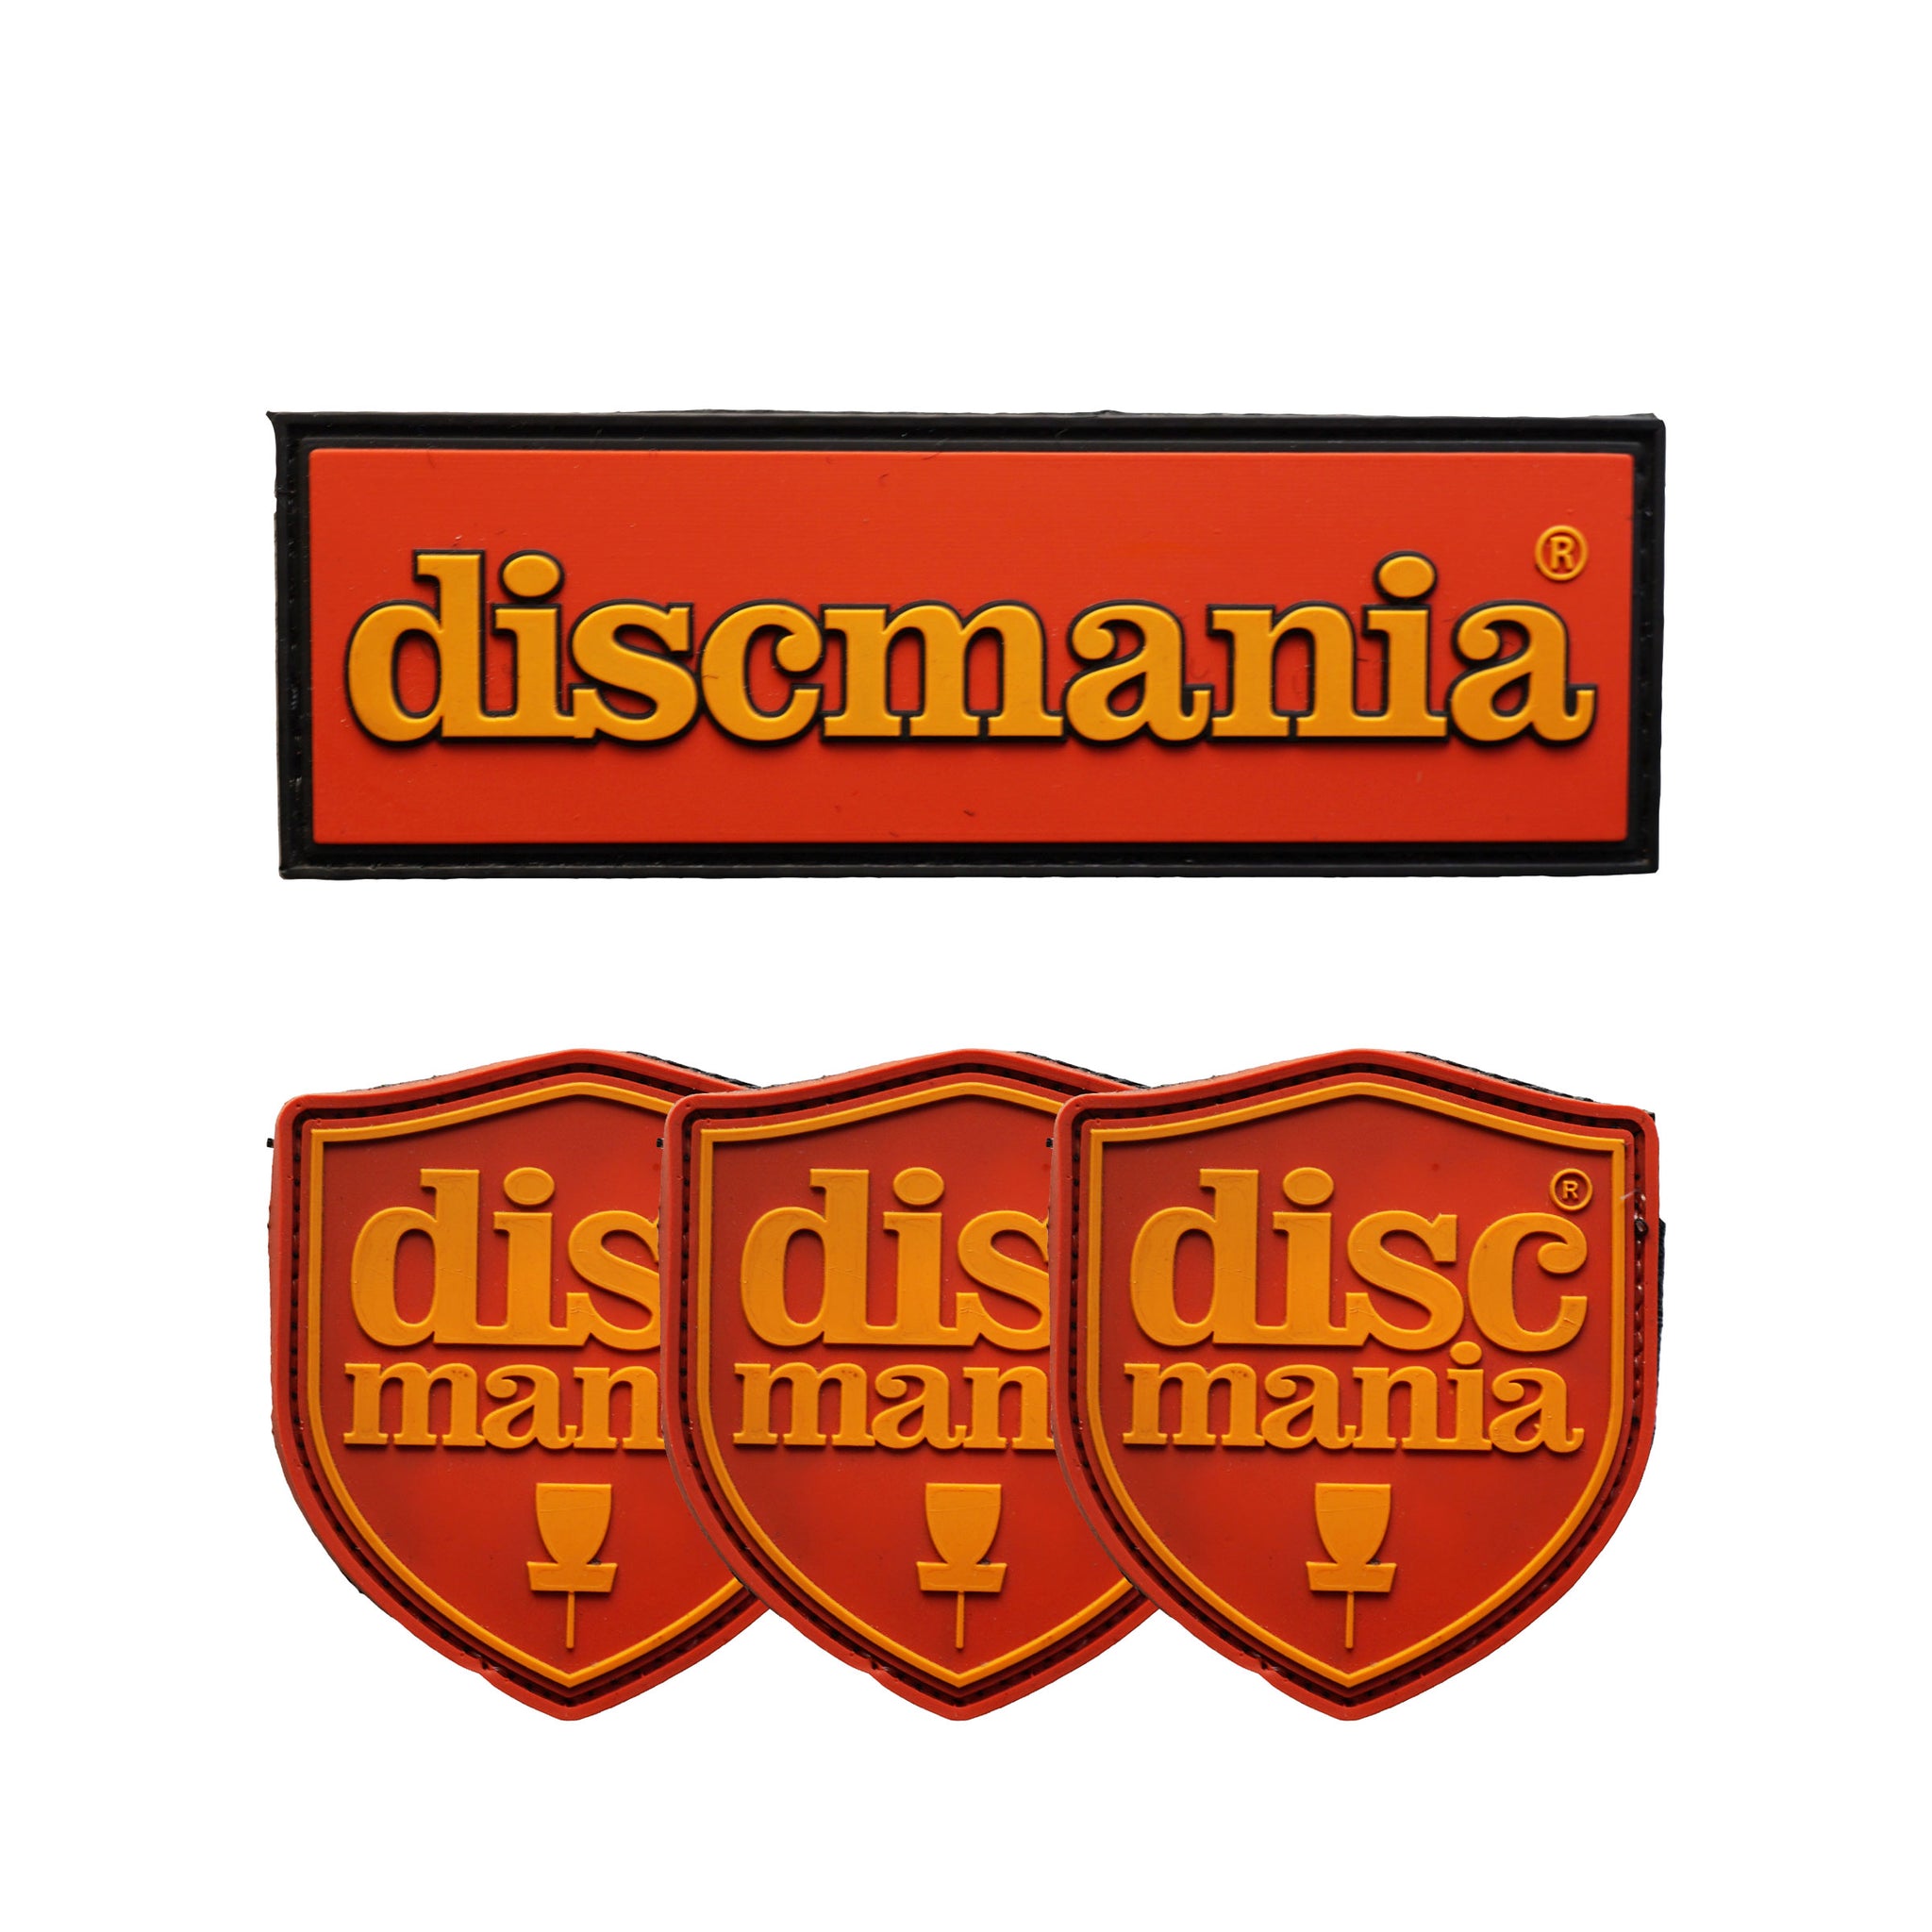 Discmania Bag Patches (Shield/Bar) – Discmania Store